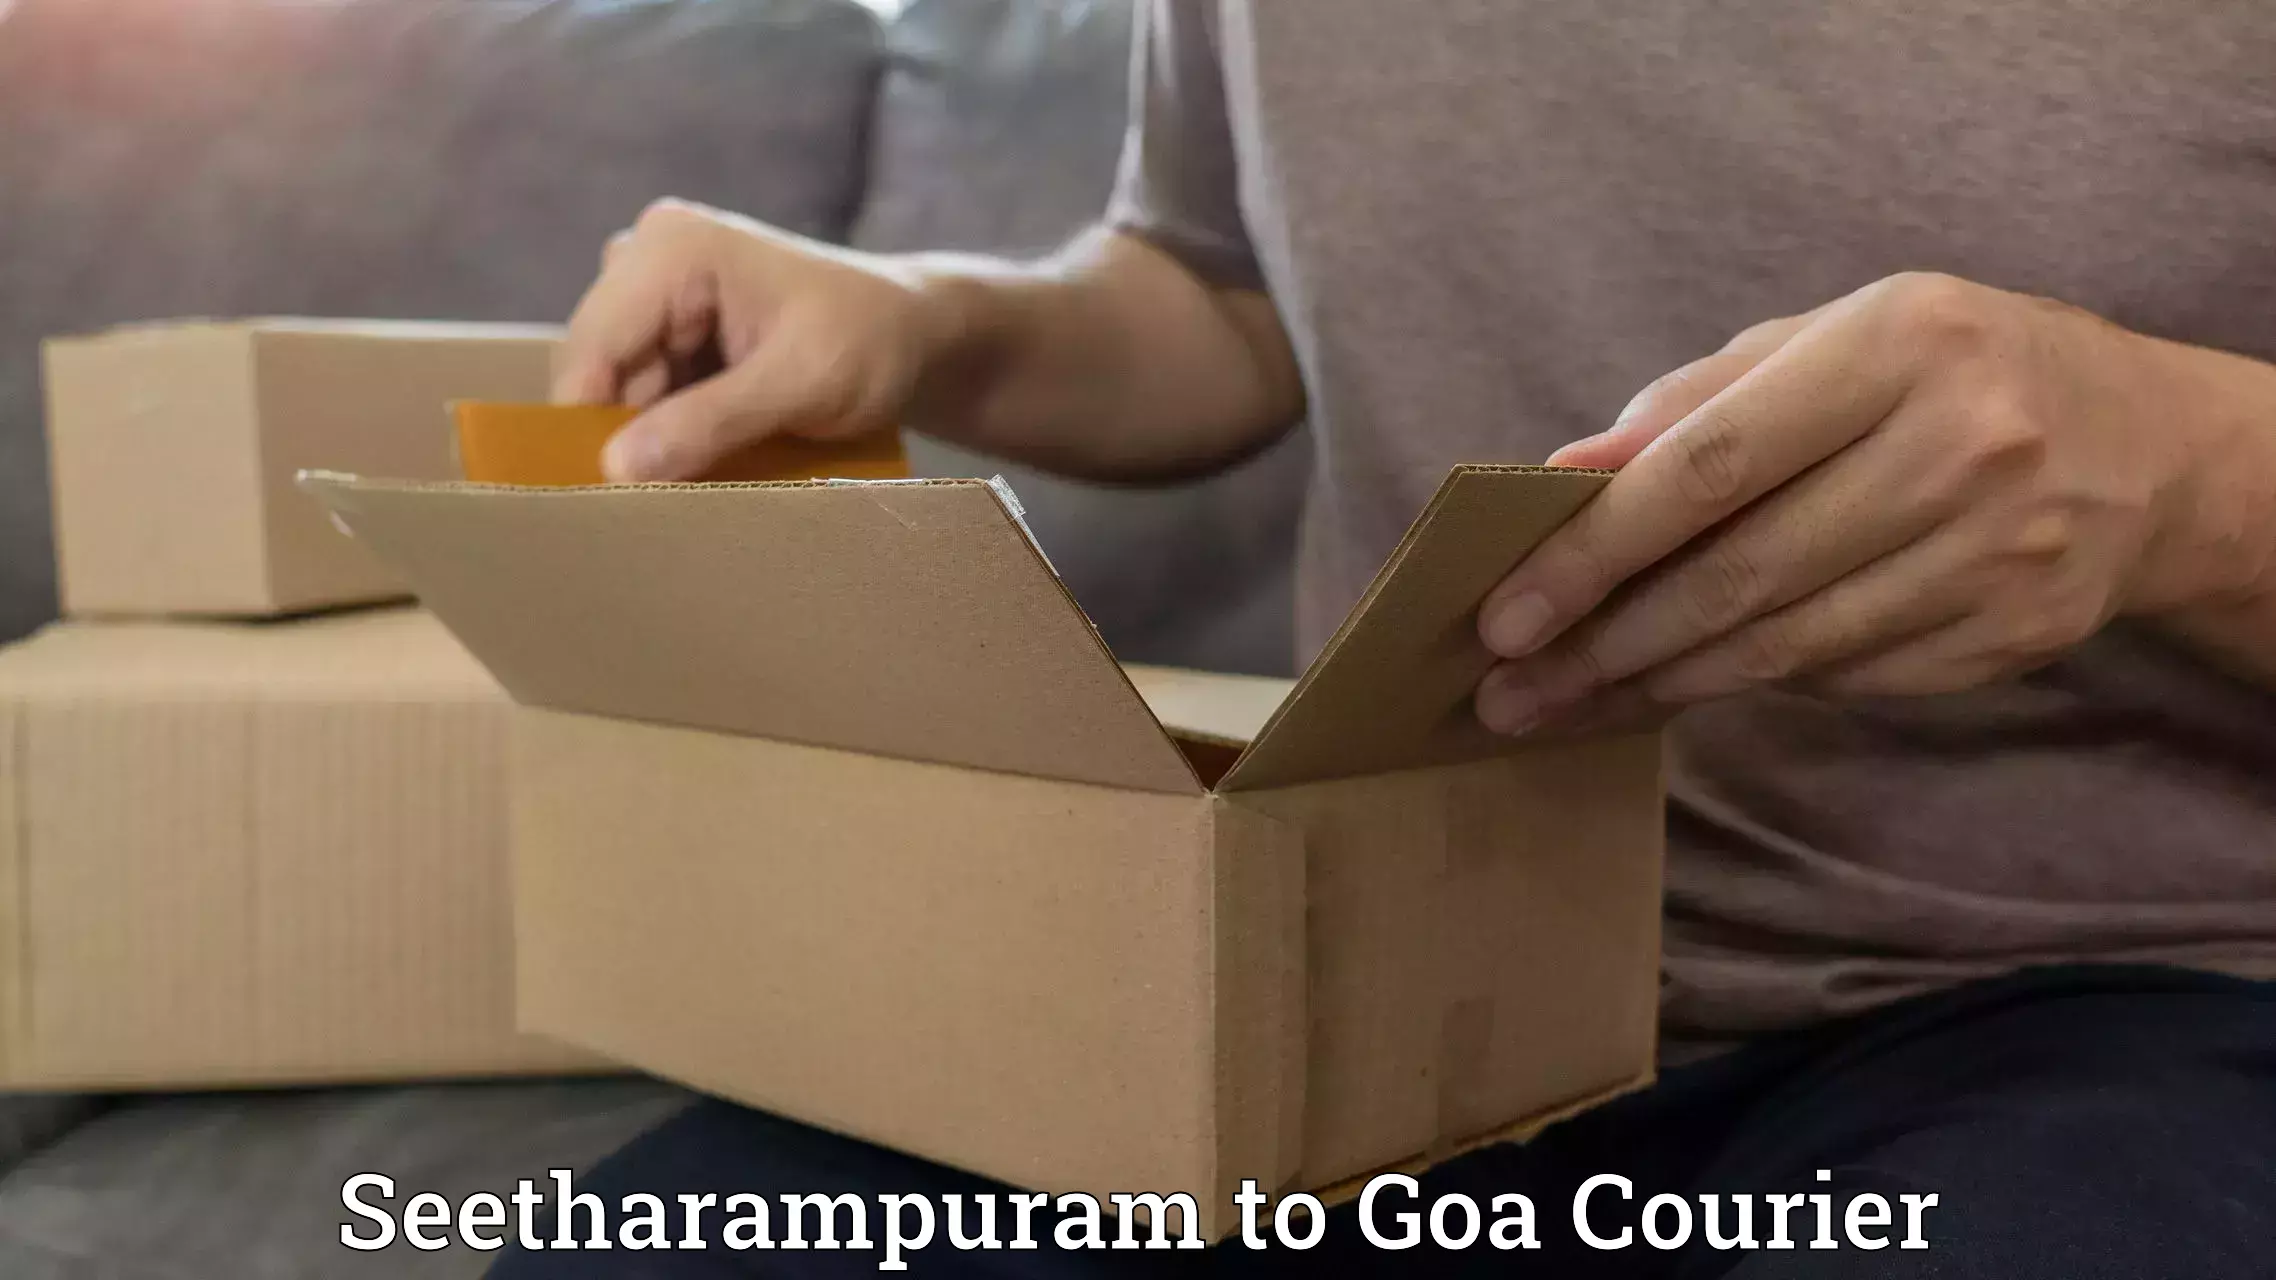 Full-service courier options Seetharampuram to Vasco da Gama